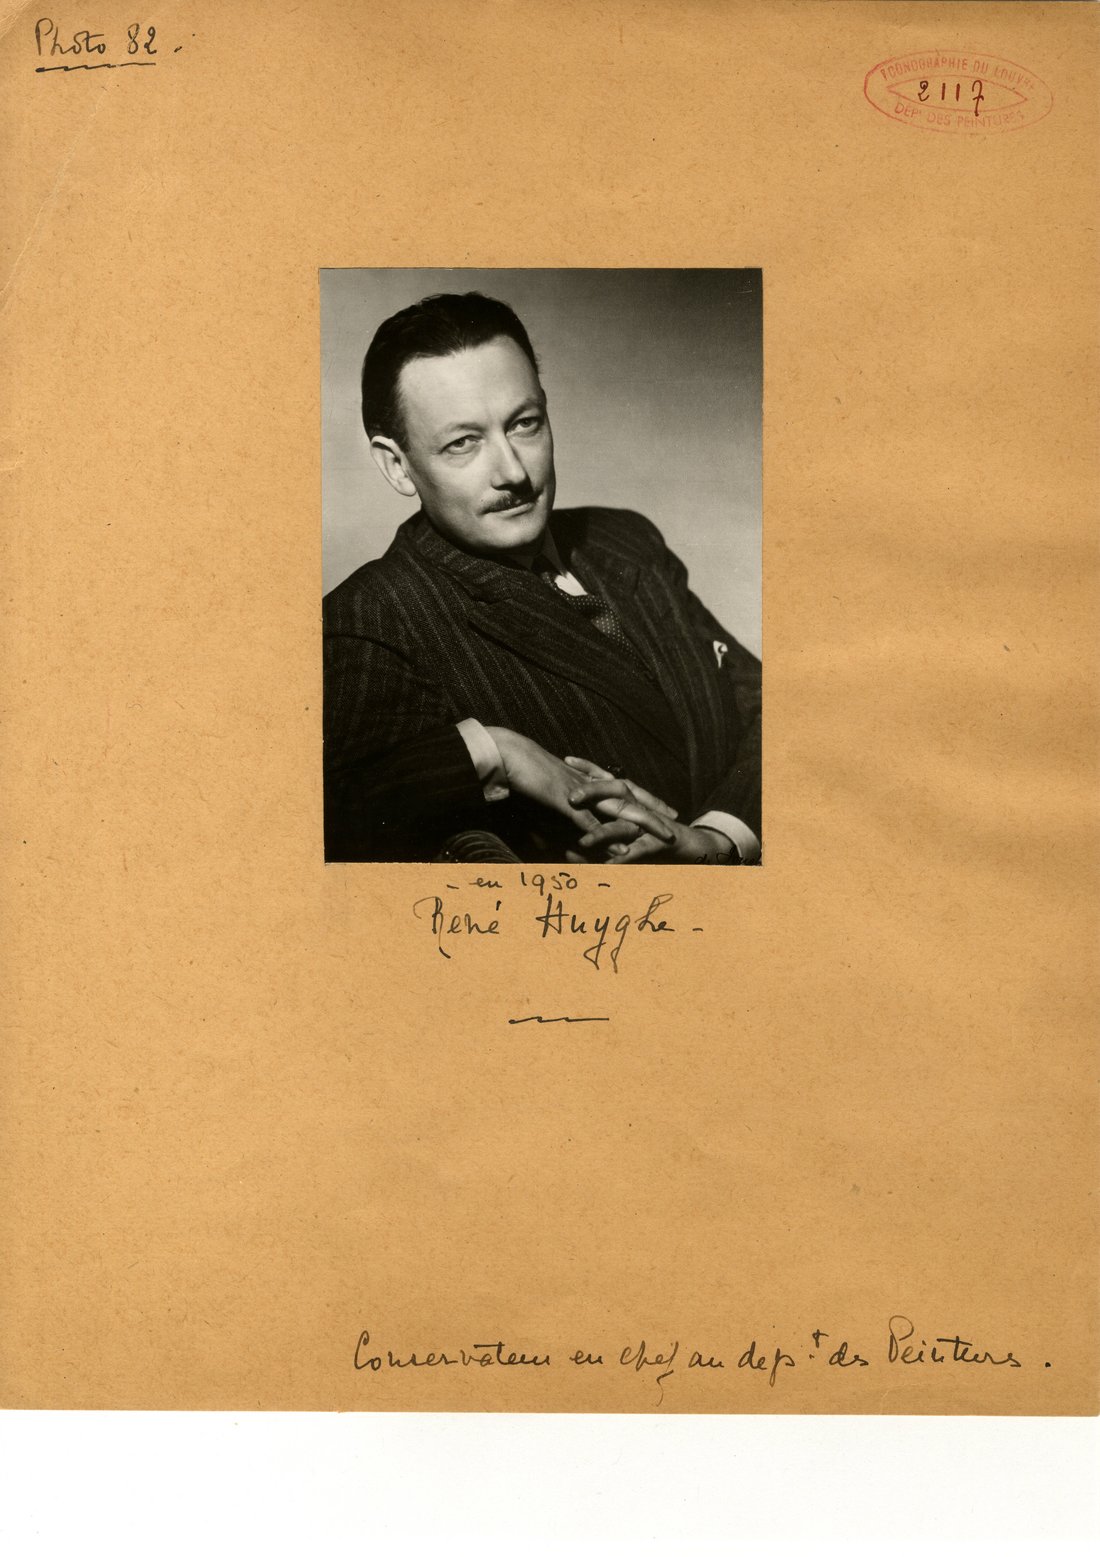 René Huyghe, photographie de 1950. Source : Documentation du Louvre.